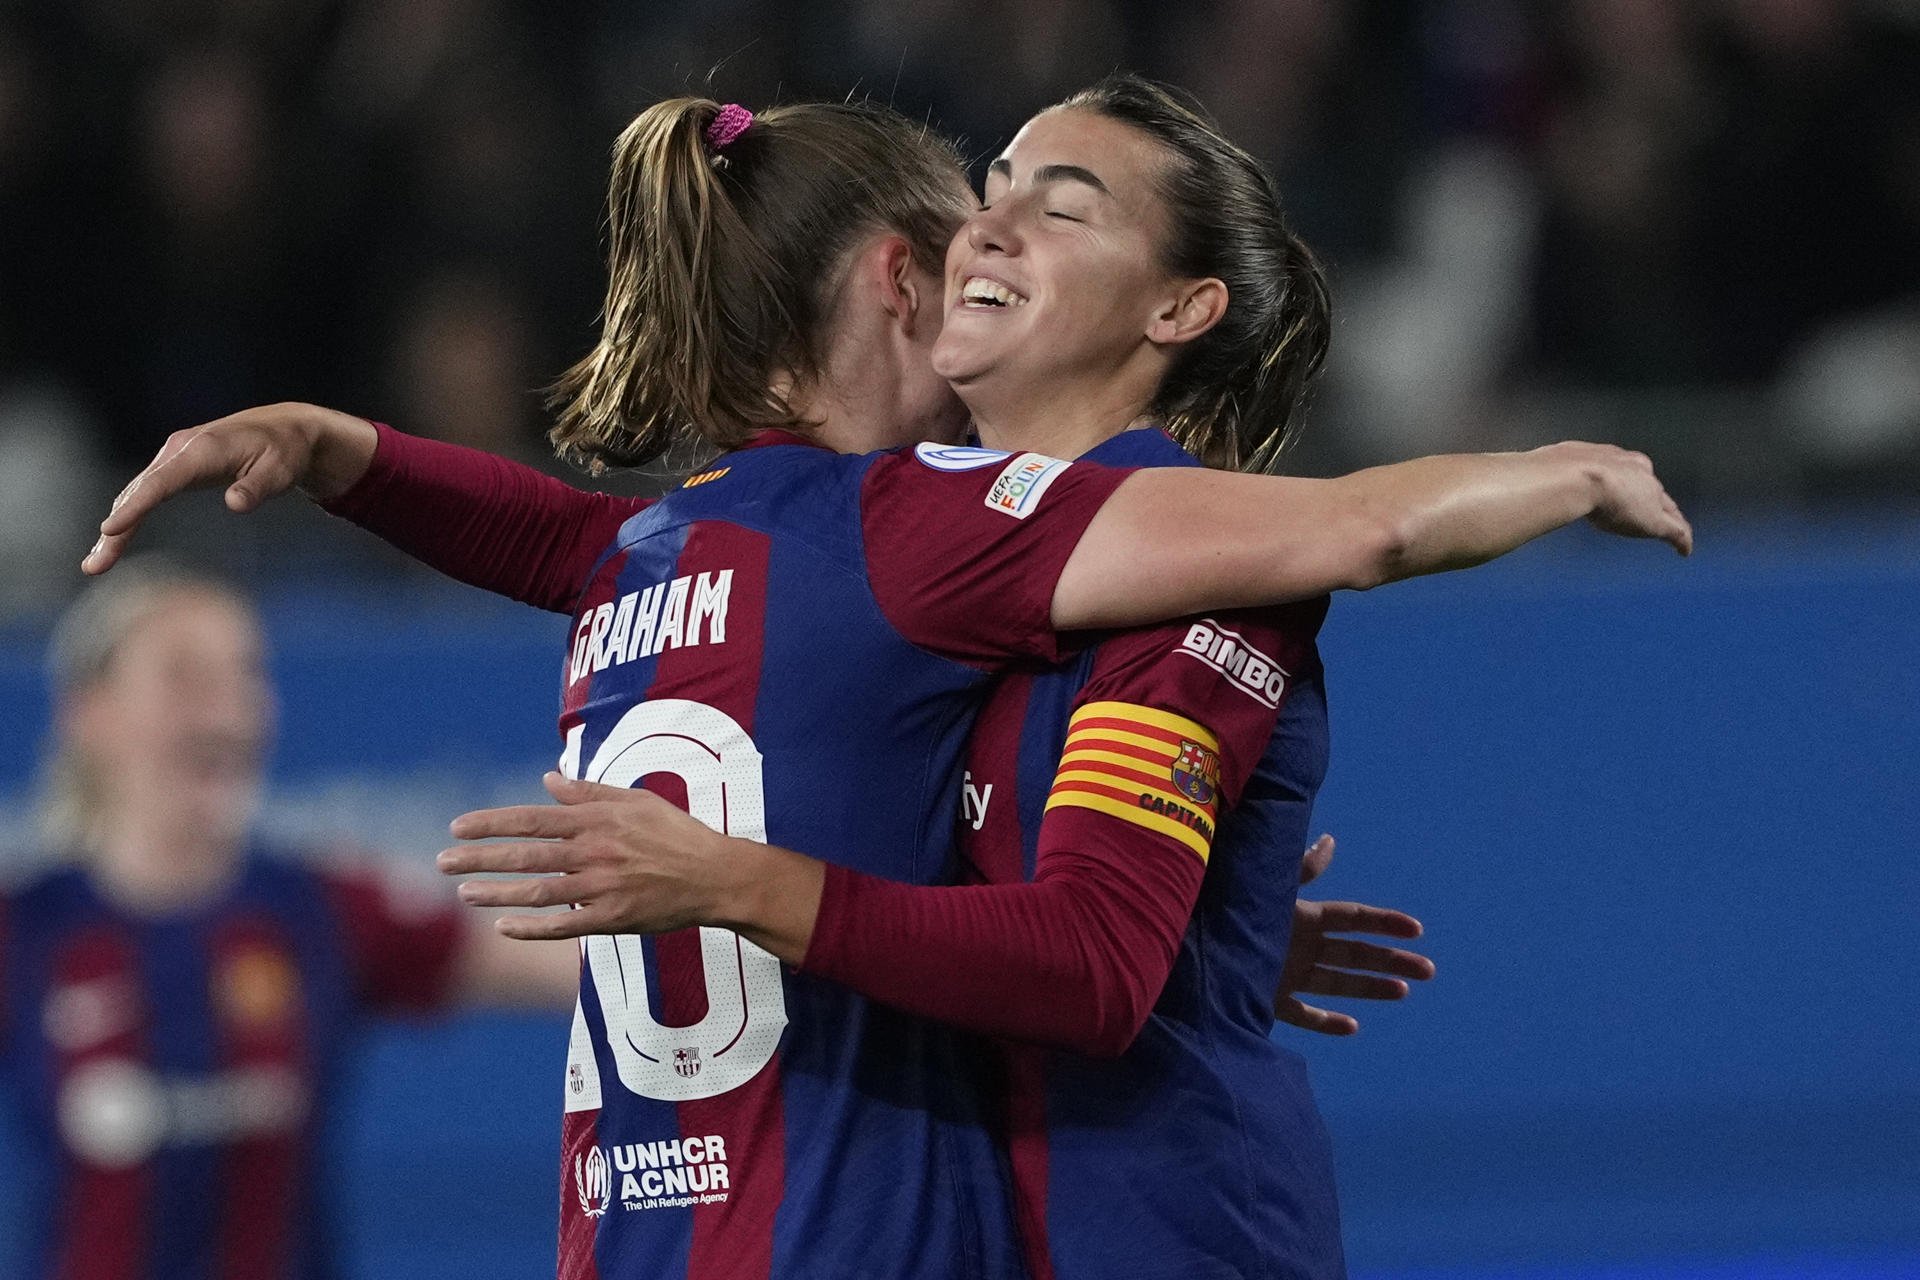 El Barça compleix contra l'Eintracht de Frankfurt i referma el liderat a la Champions femenina (2-0)